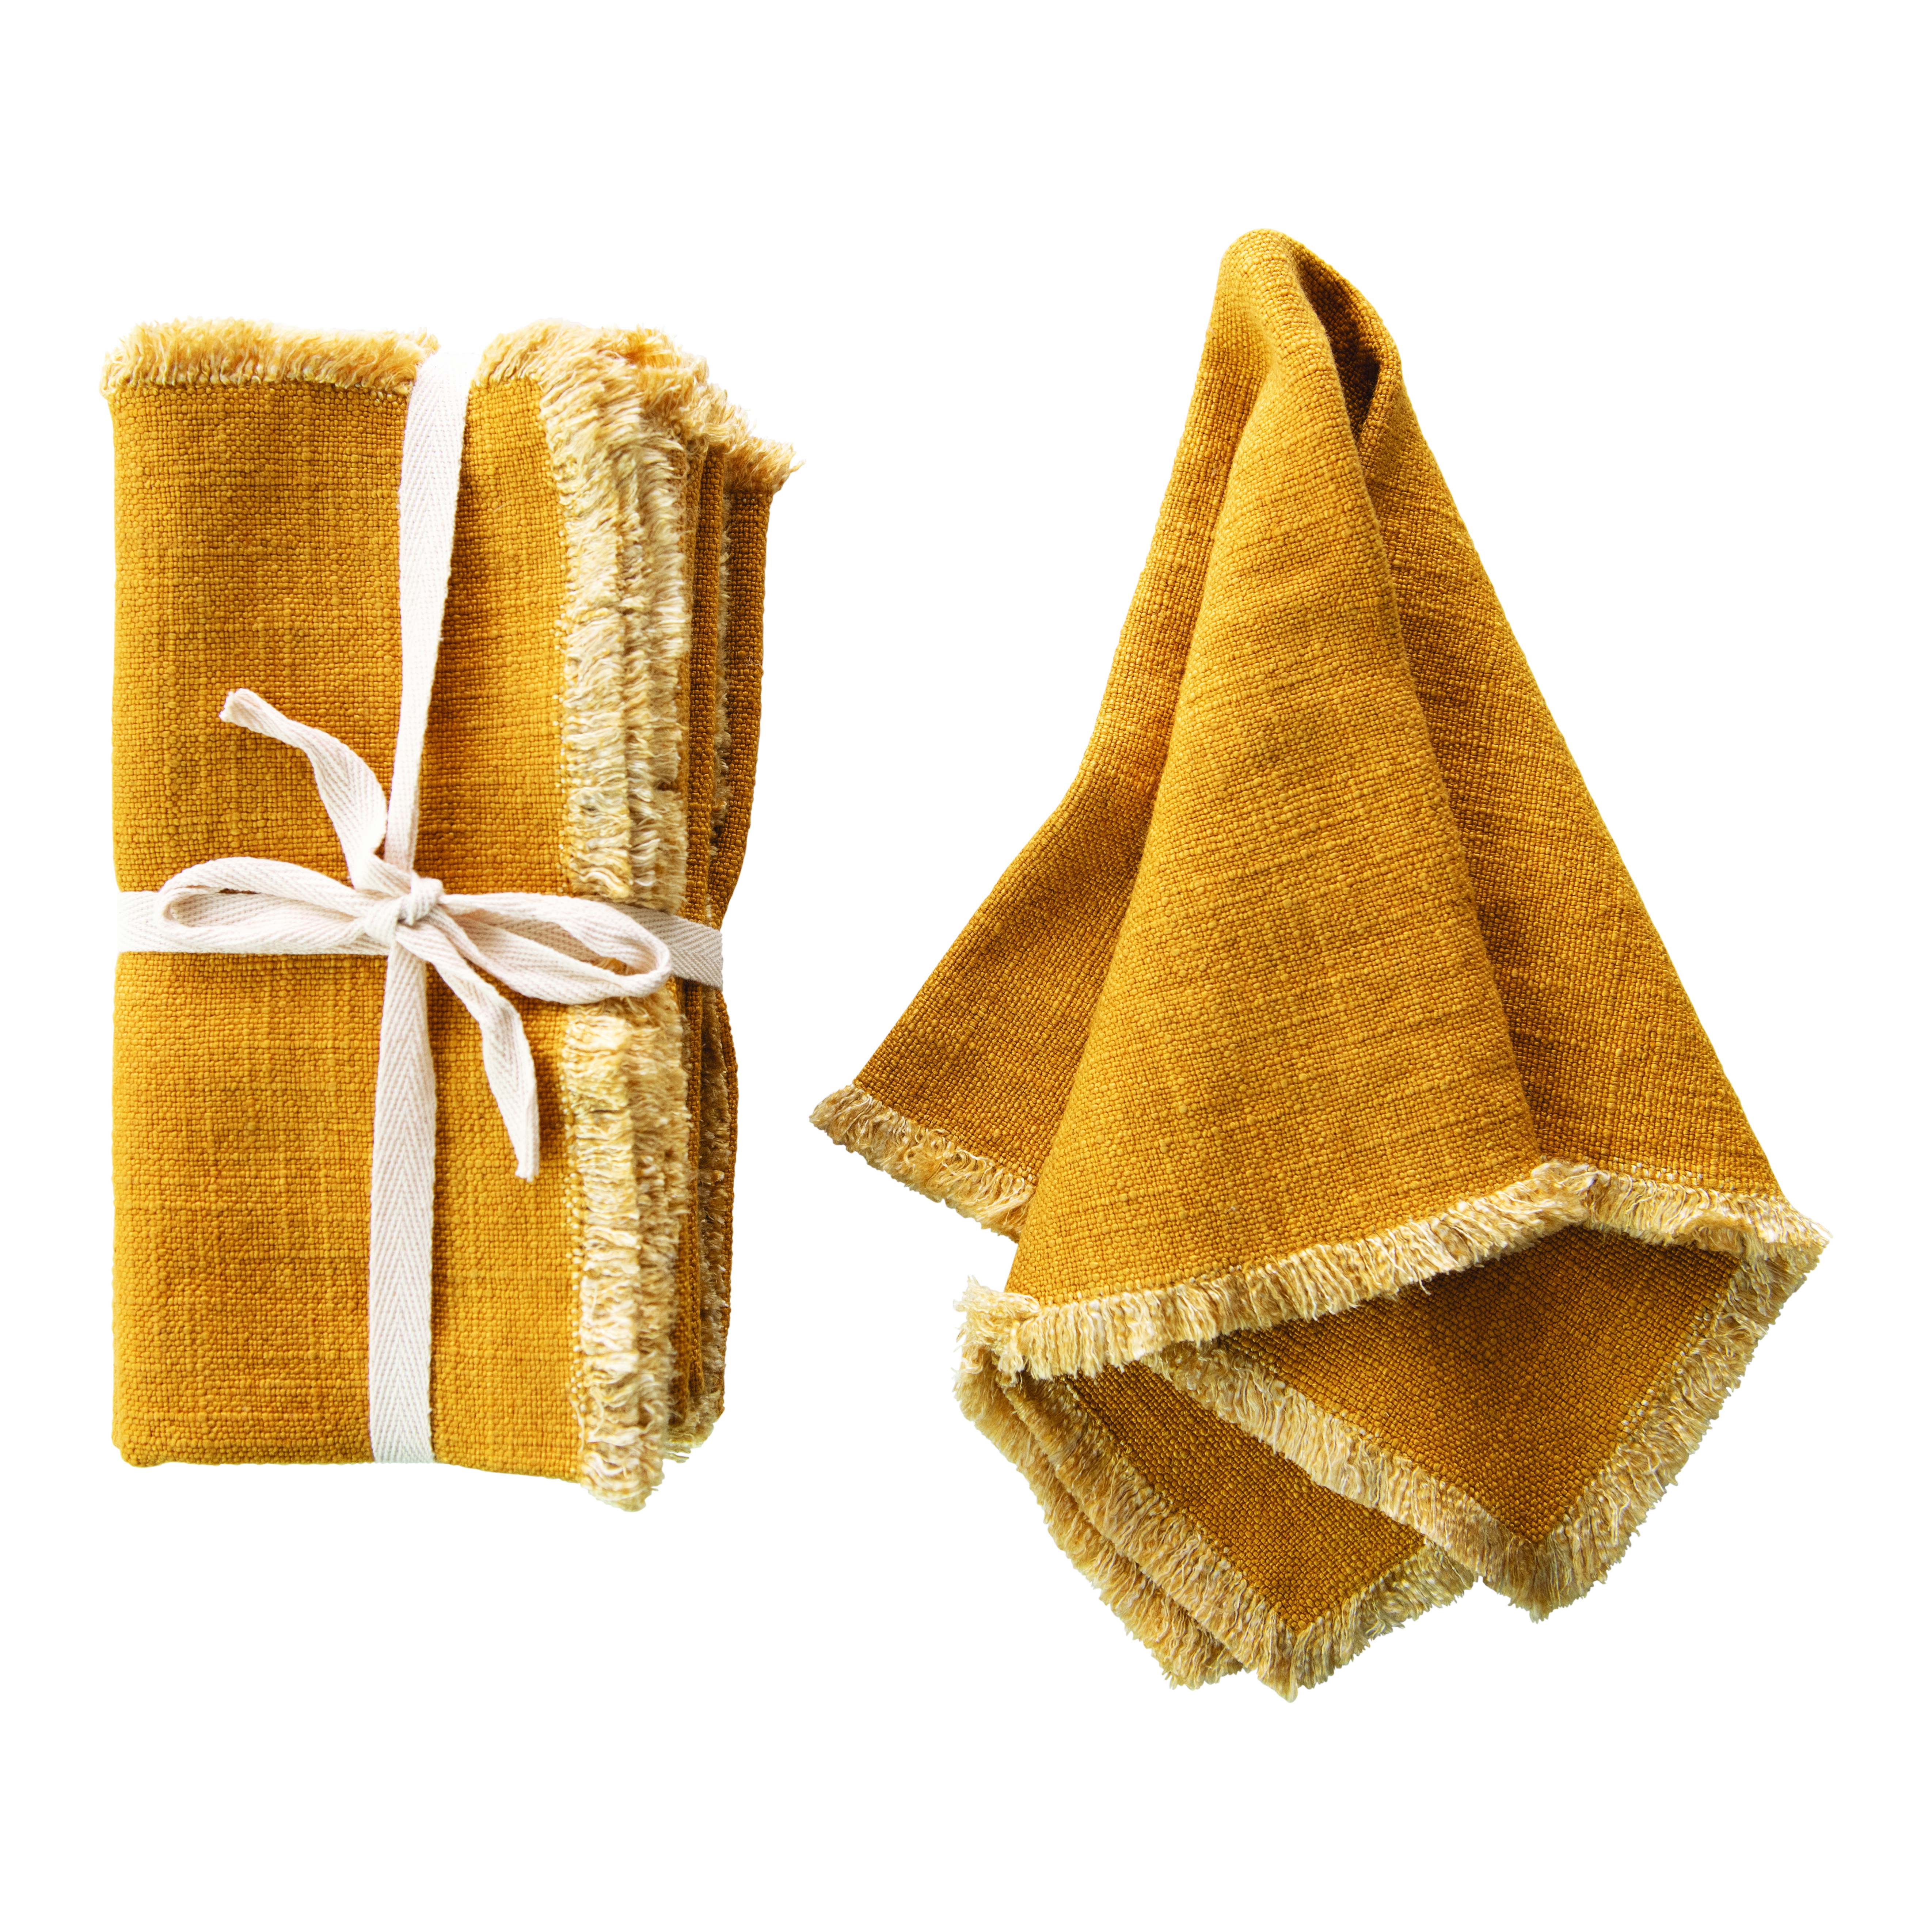 Mustard Square Linen Blend Napkin with Fringe Trim (Set of 4) - Image 0